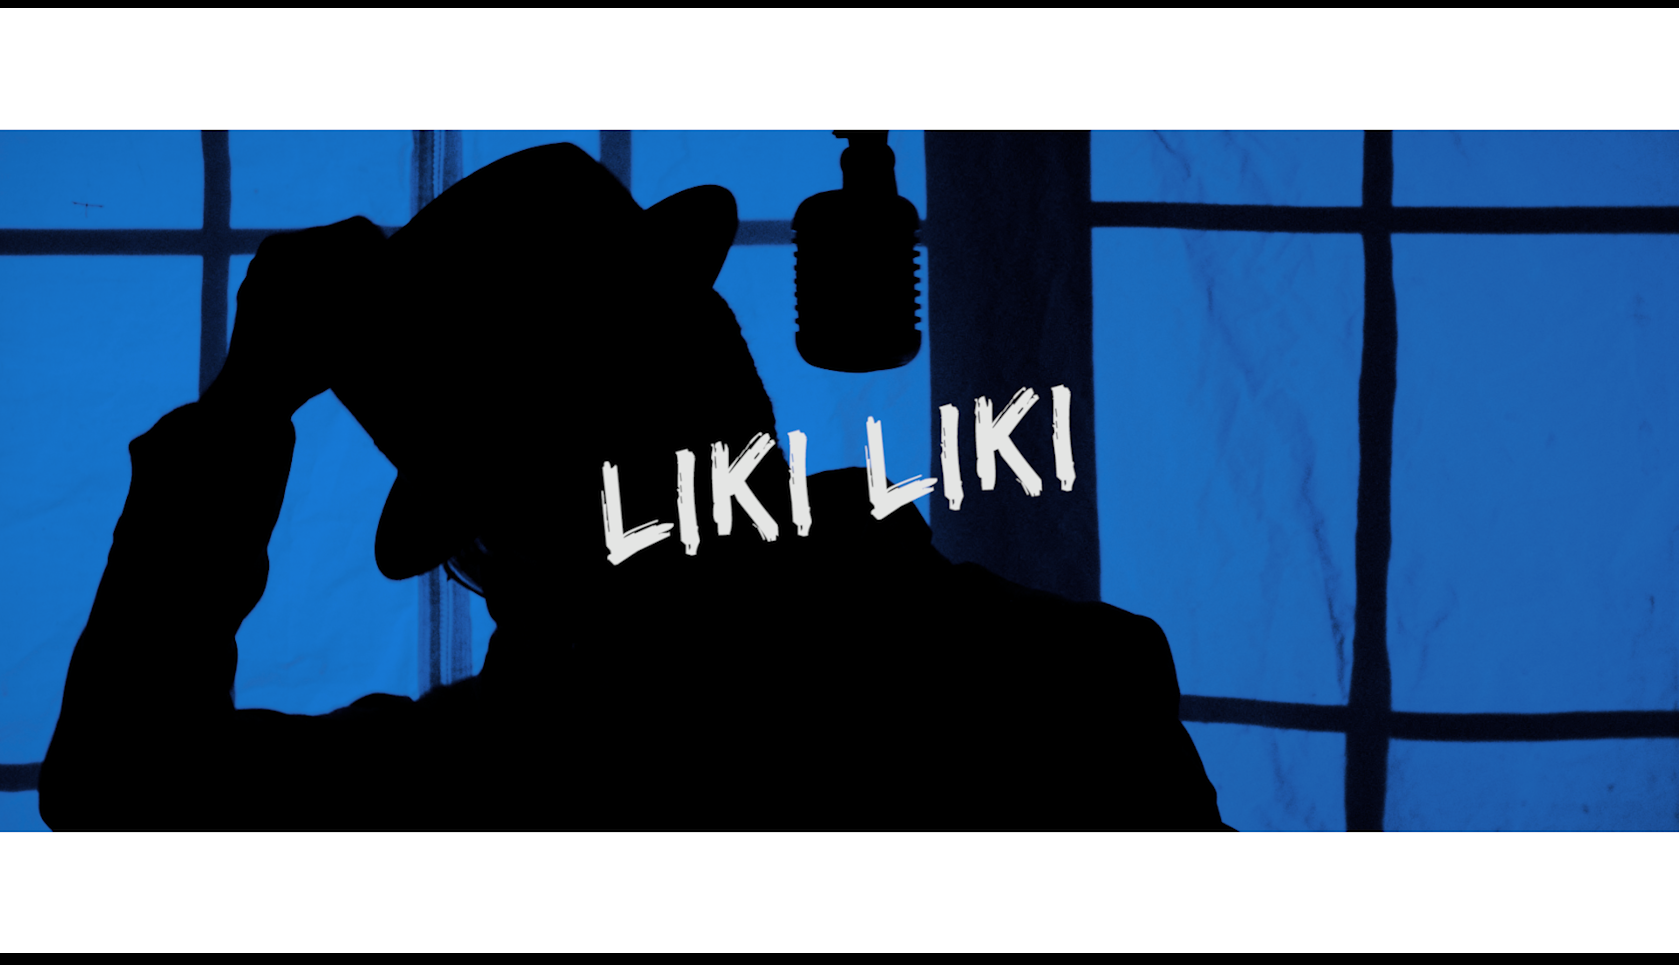 MC RAI - Liki Liki